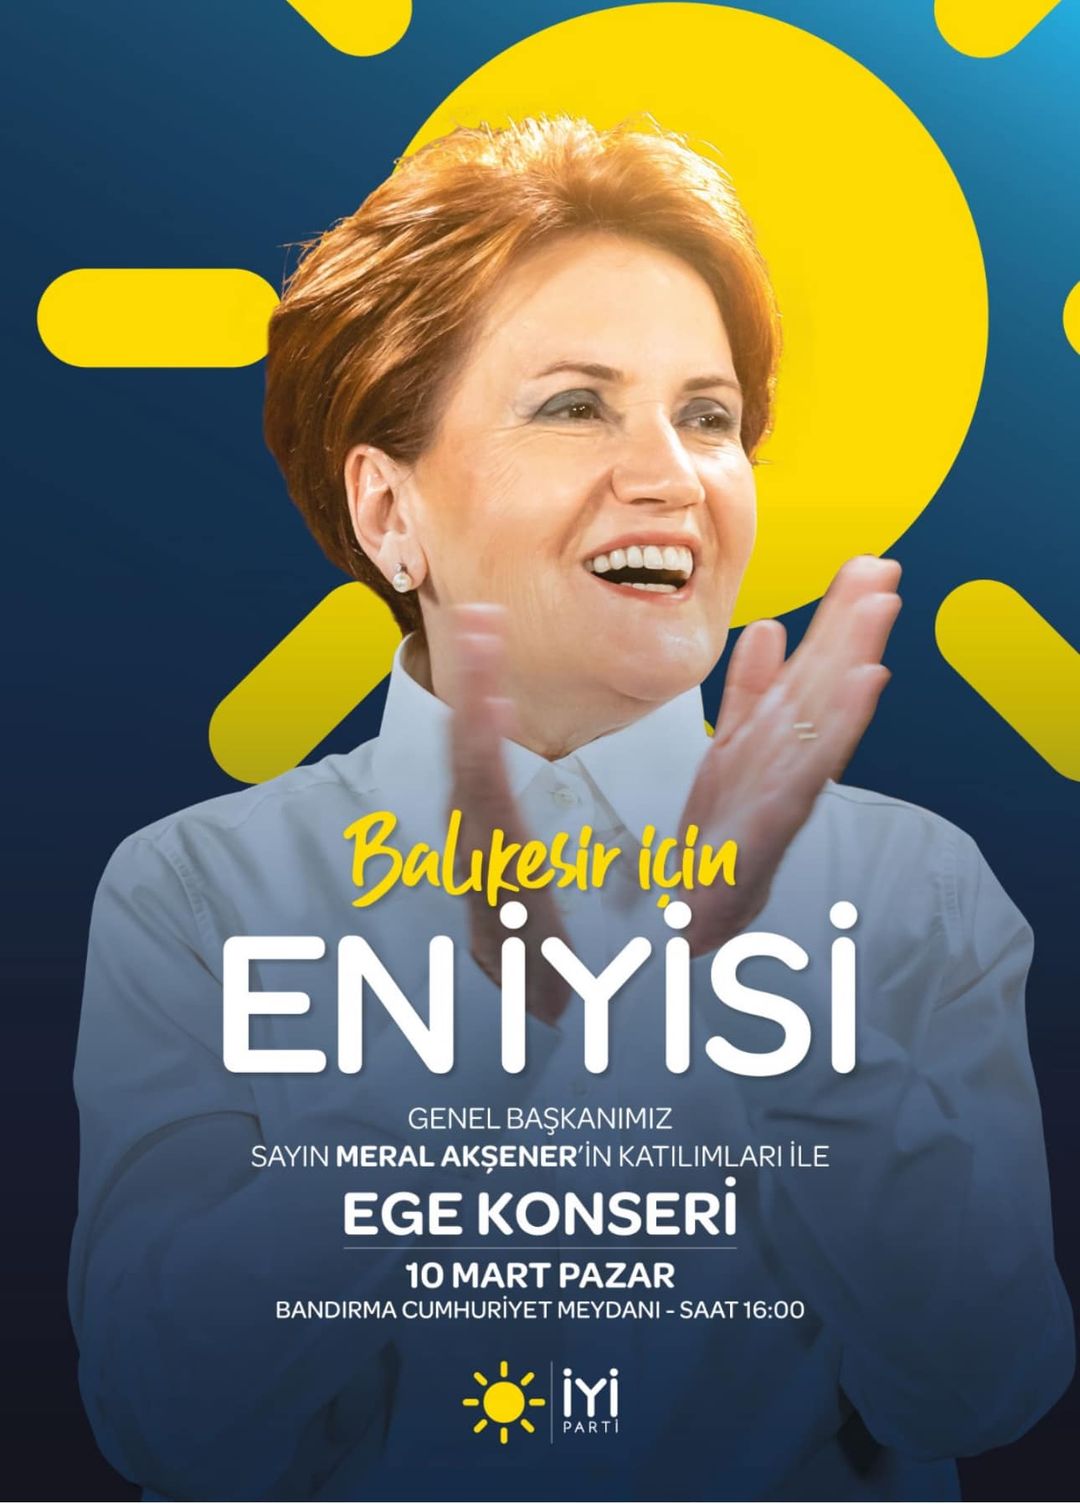 İYİ Parti Genel Başkanı Meral Akşener, Balıkesir'de Ege temalı müzik konserine katılacak